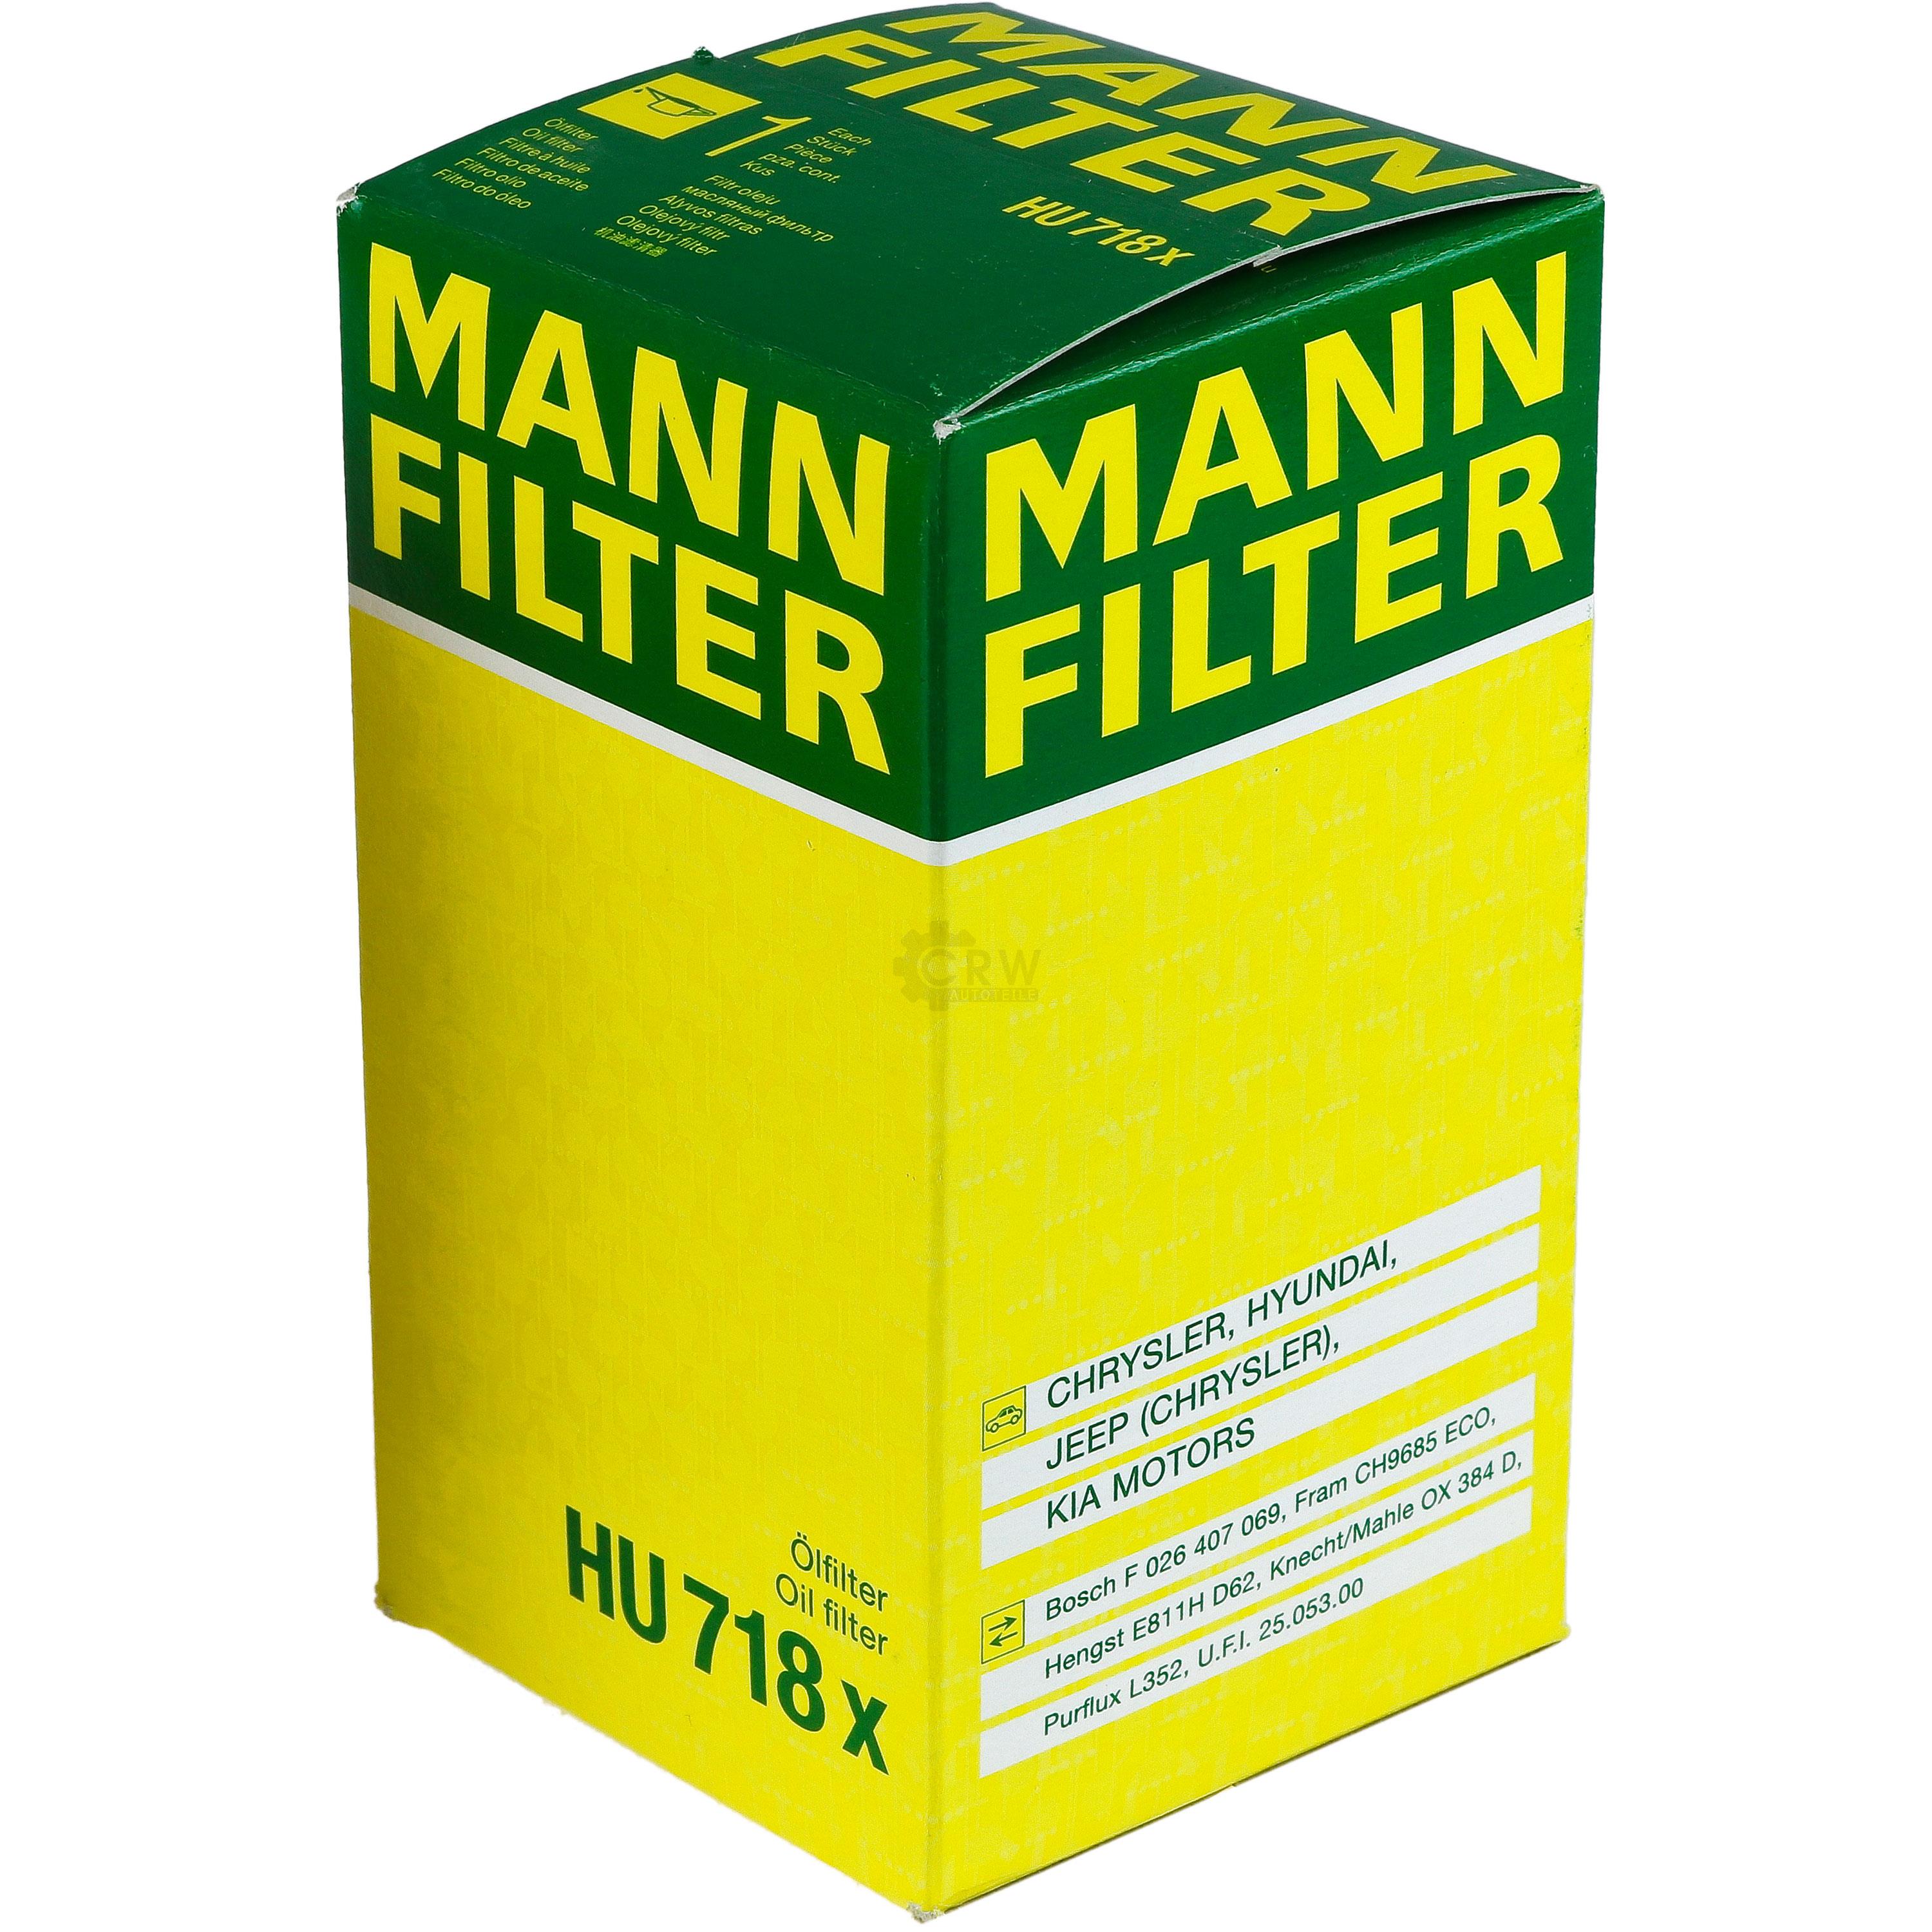 MANN-FILTER Ölfilter HU 718 x Oil Filter